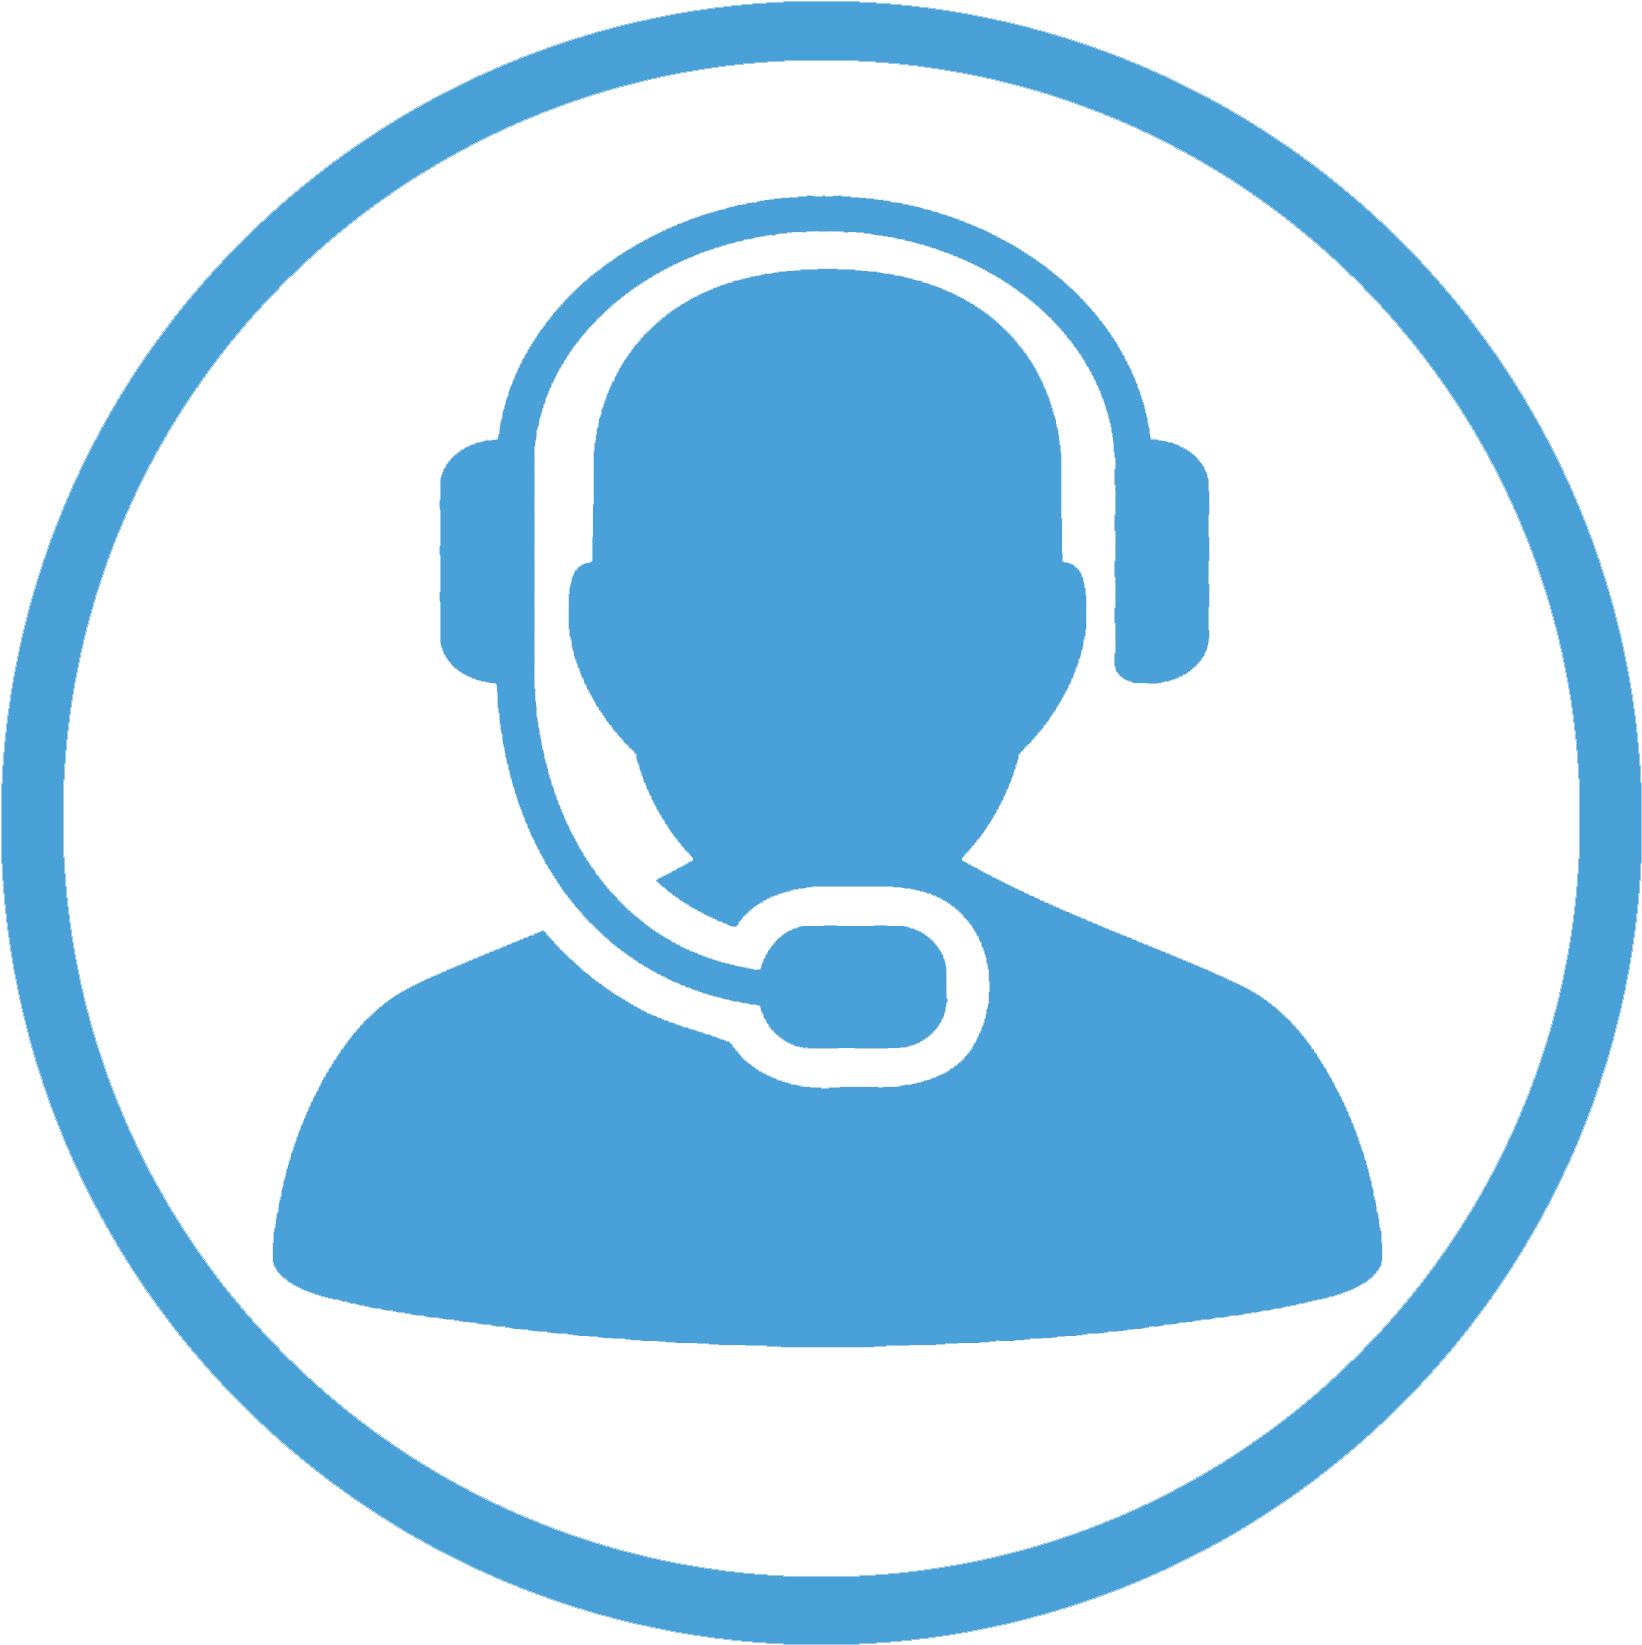 Customer Helpdesk - Call Center Icon Vector (1680x1680)